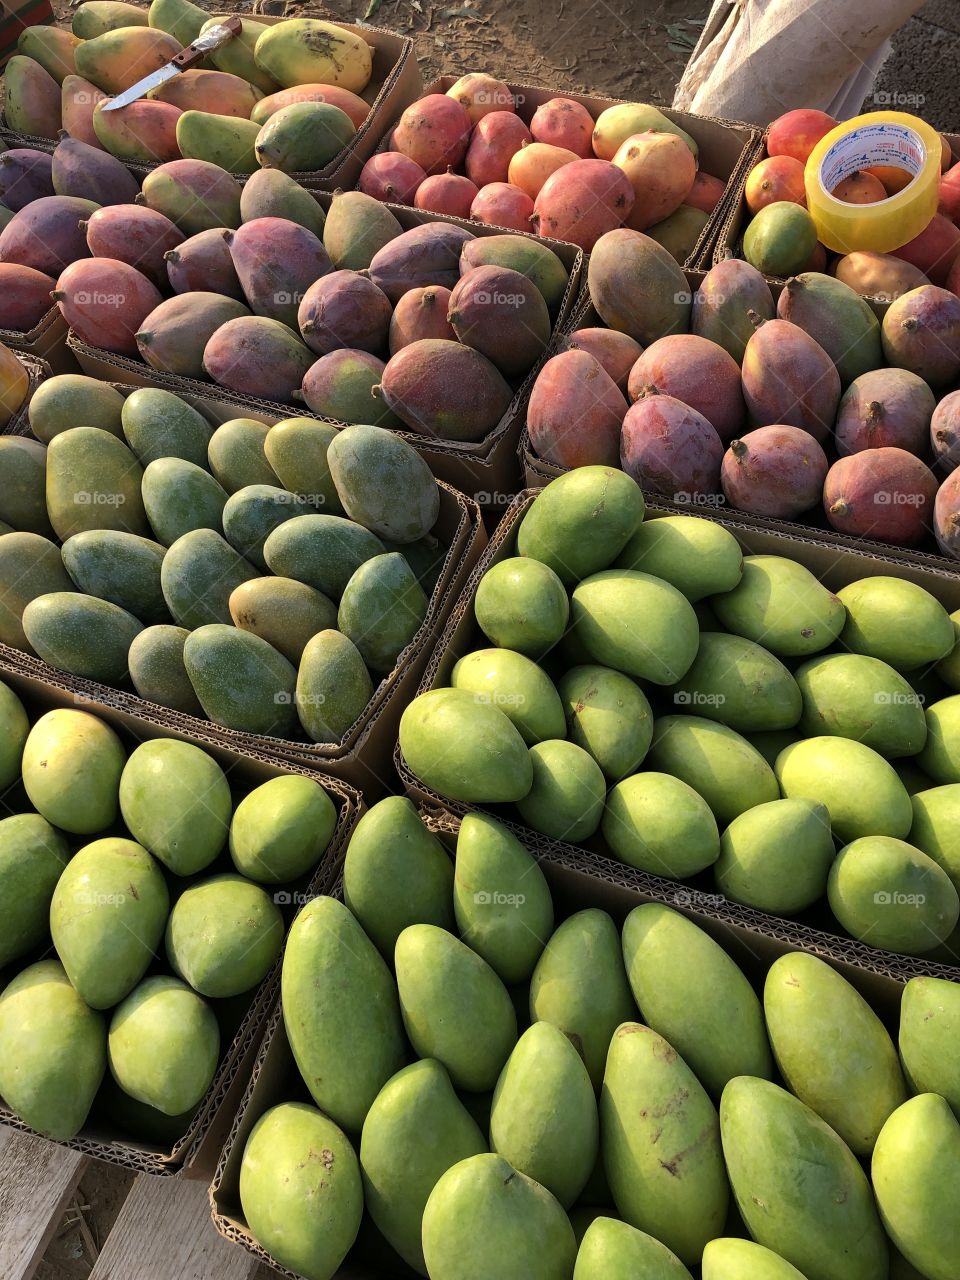 Mango season